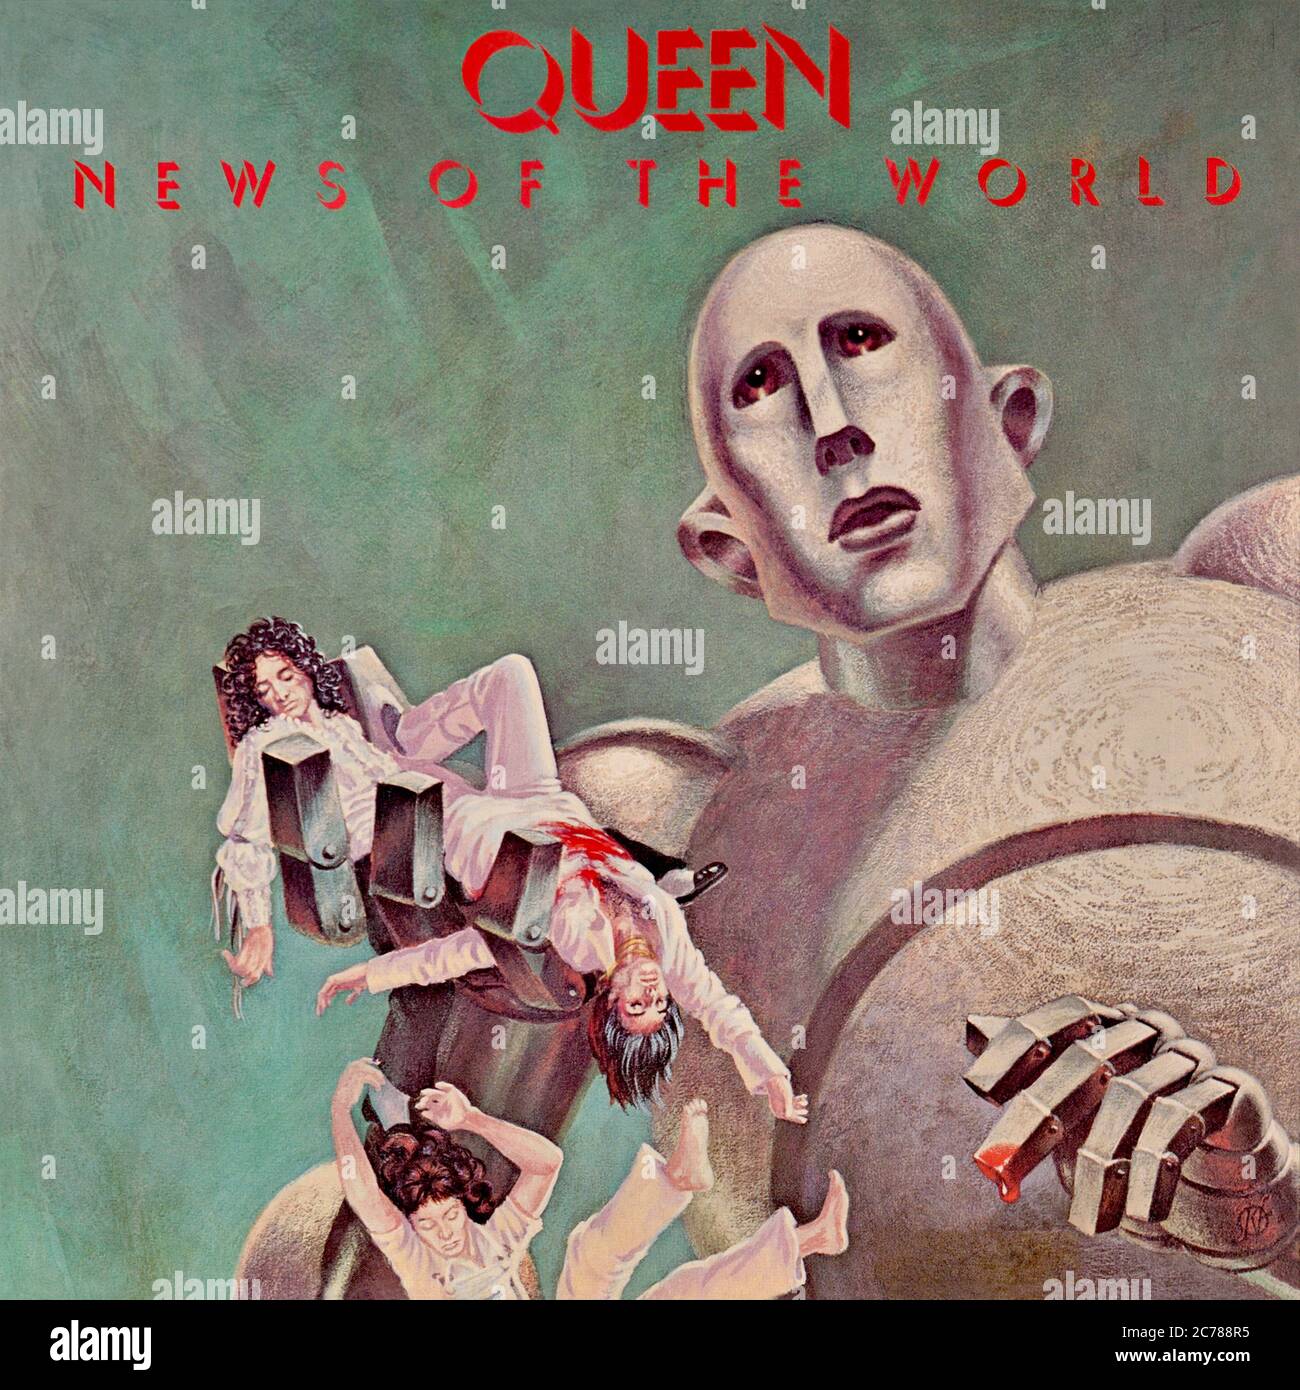 Queen - copertina originale dell'album in vinile - News of the World - 1977  Foto stock - Alamy